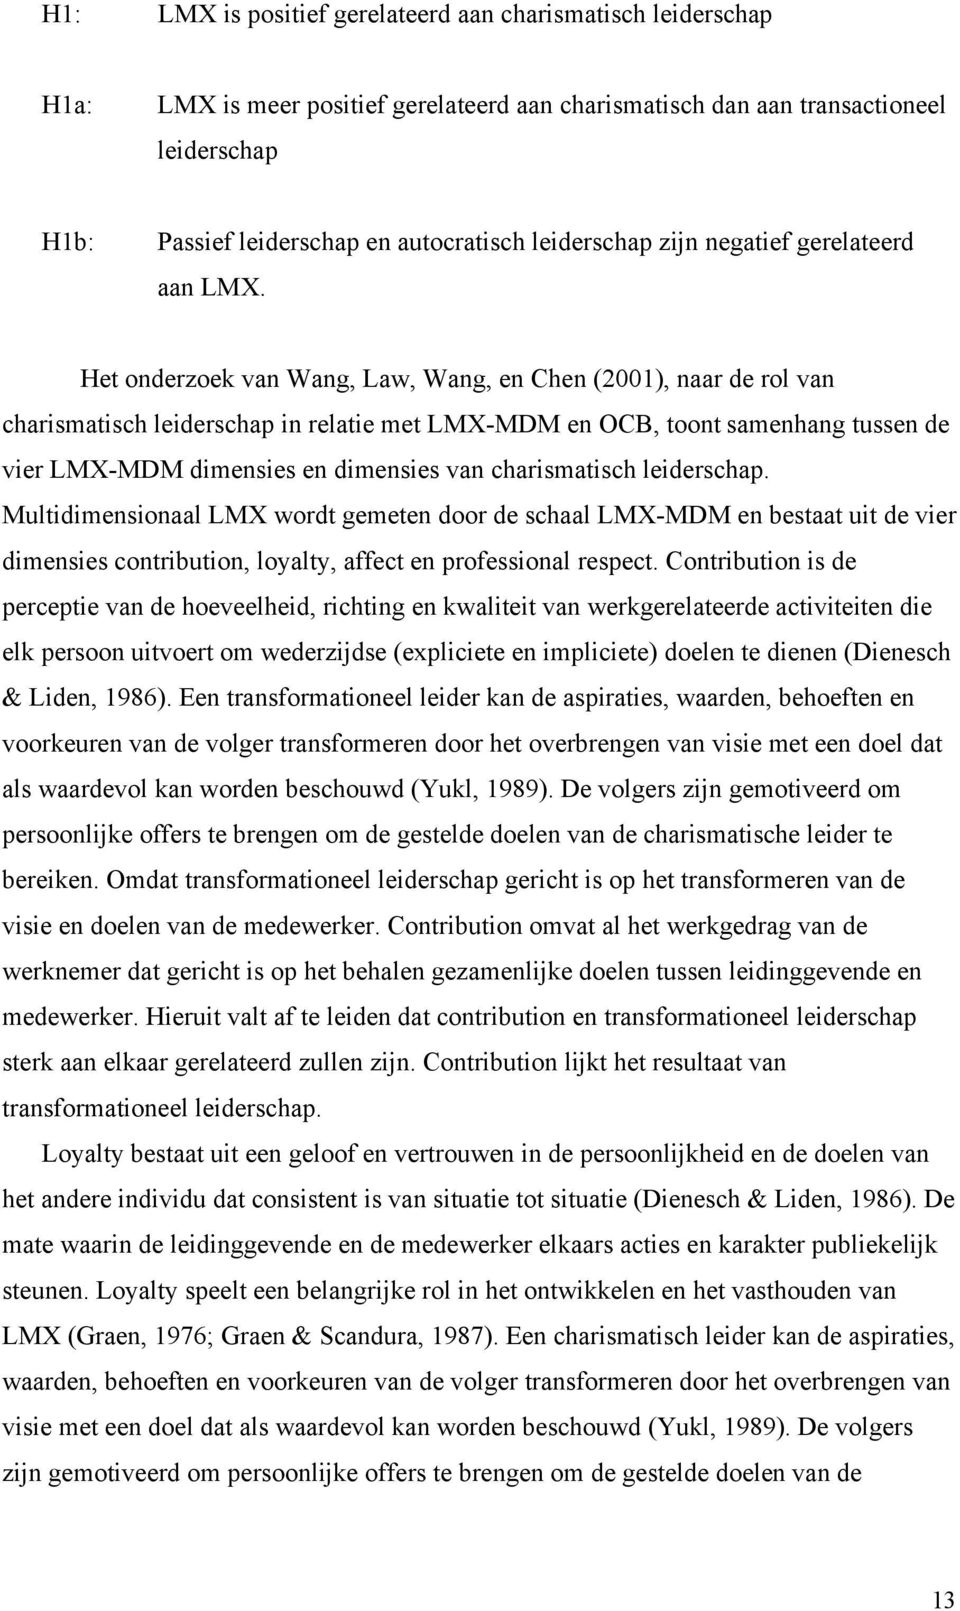 Het onderzoek van Wang, Law, Wang, en Chen (2001), naar de rol van charismatisch leiderschap in relatie met LMX-MDM en OCB, toont samenhang tussen de vier LMX-MDM dimensies en dimensies van